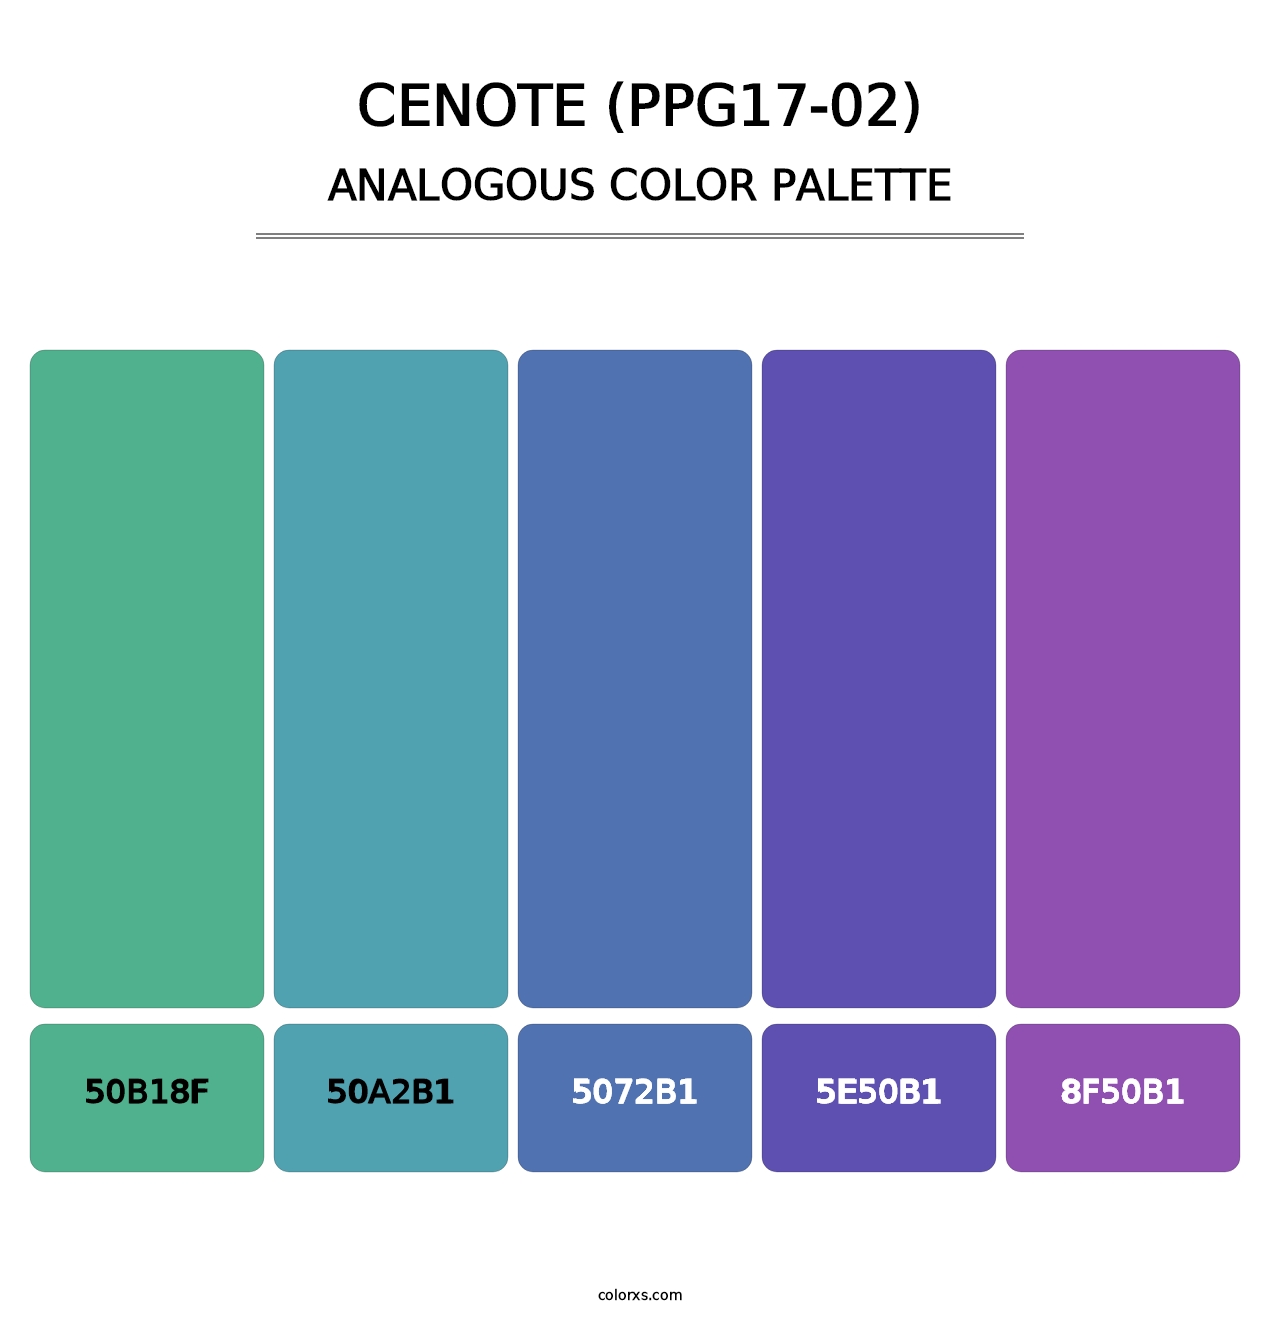 Cenote (PPG17-02) - Analogous Color Palette